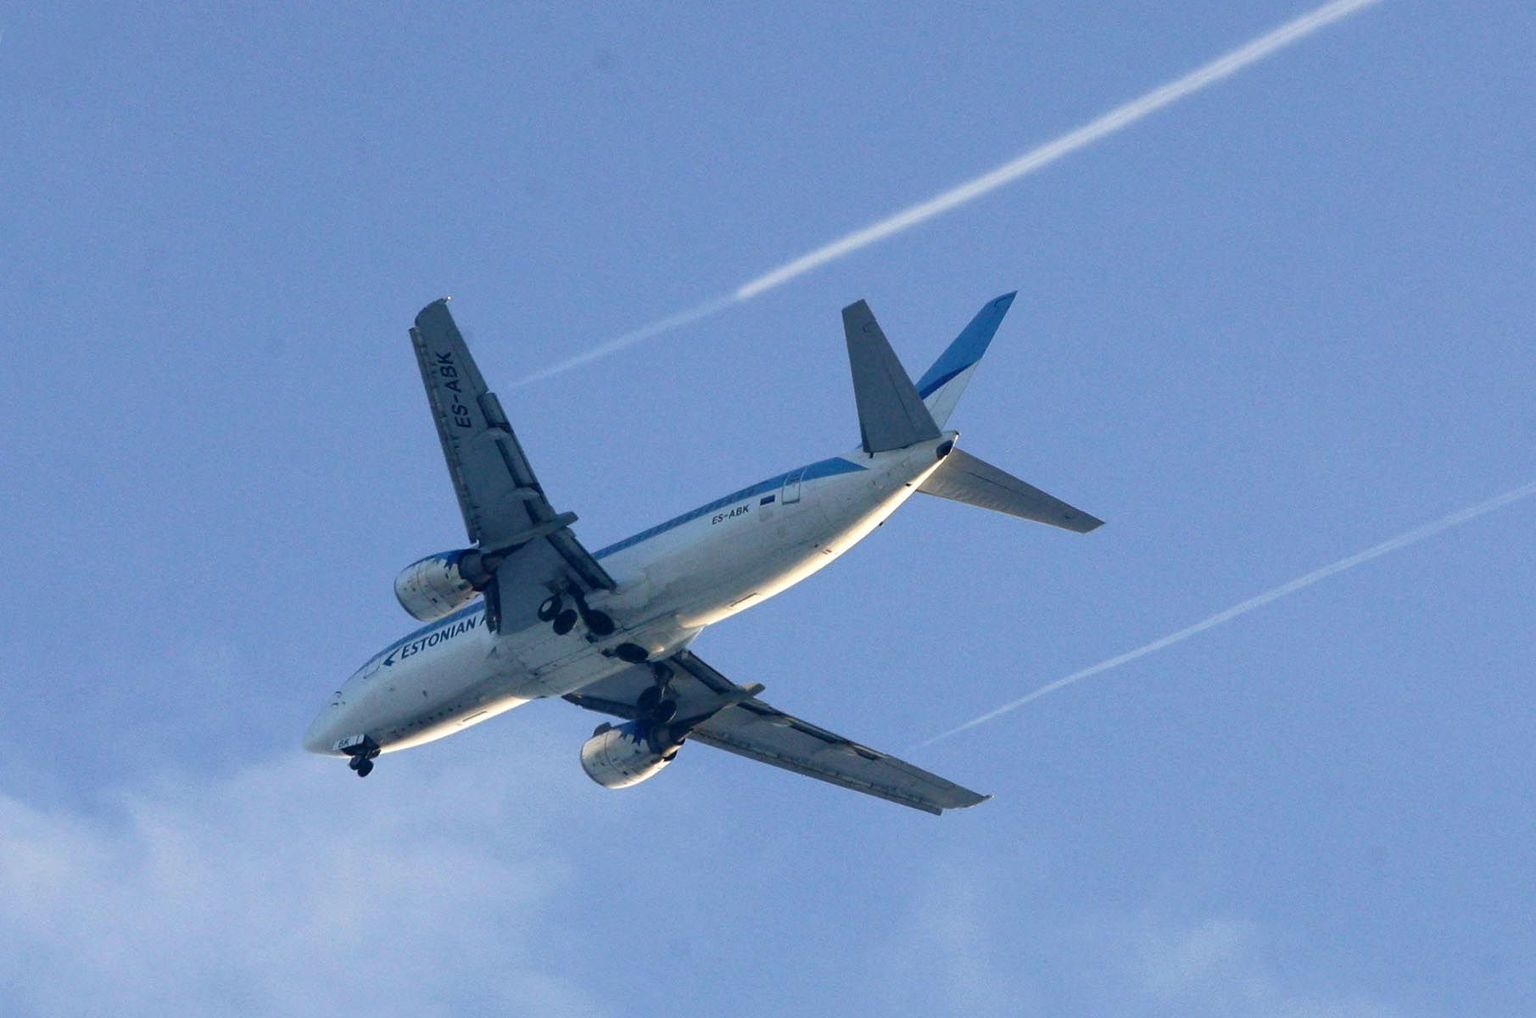 Eesti taevasse teevad triipe nii Estonian
Airi kui ka välismaiste ettevõtete lennukid. Kõiki meie õhuruumis toimuvaid lende kontrollivad Lennuliiklusteeninduse töötajad.